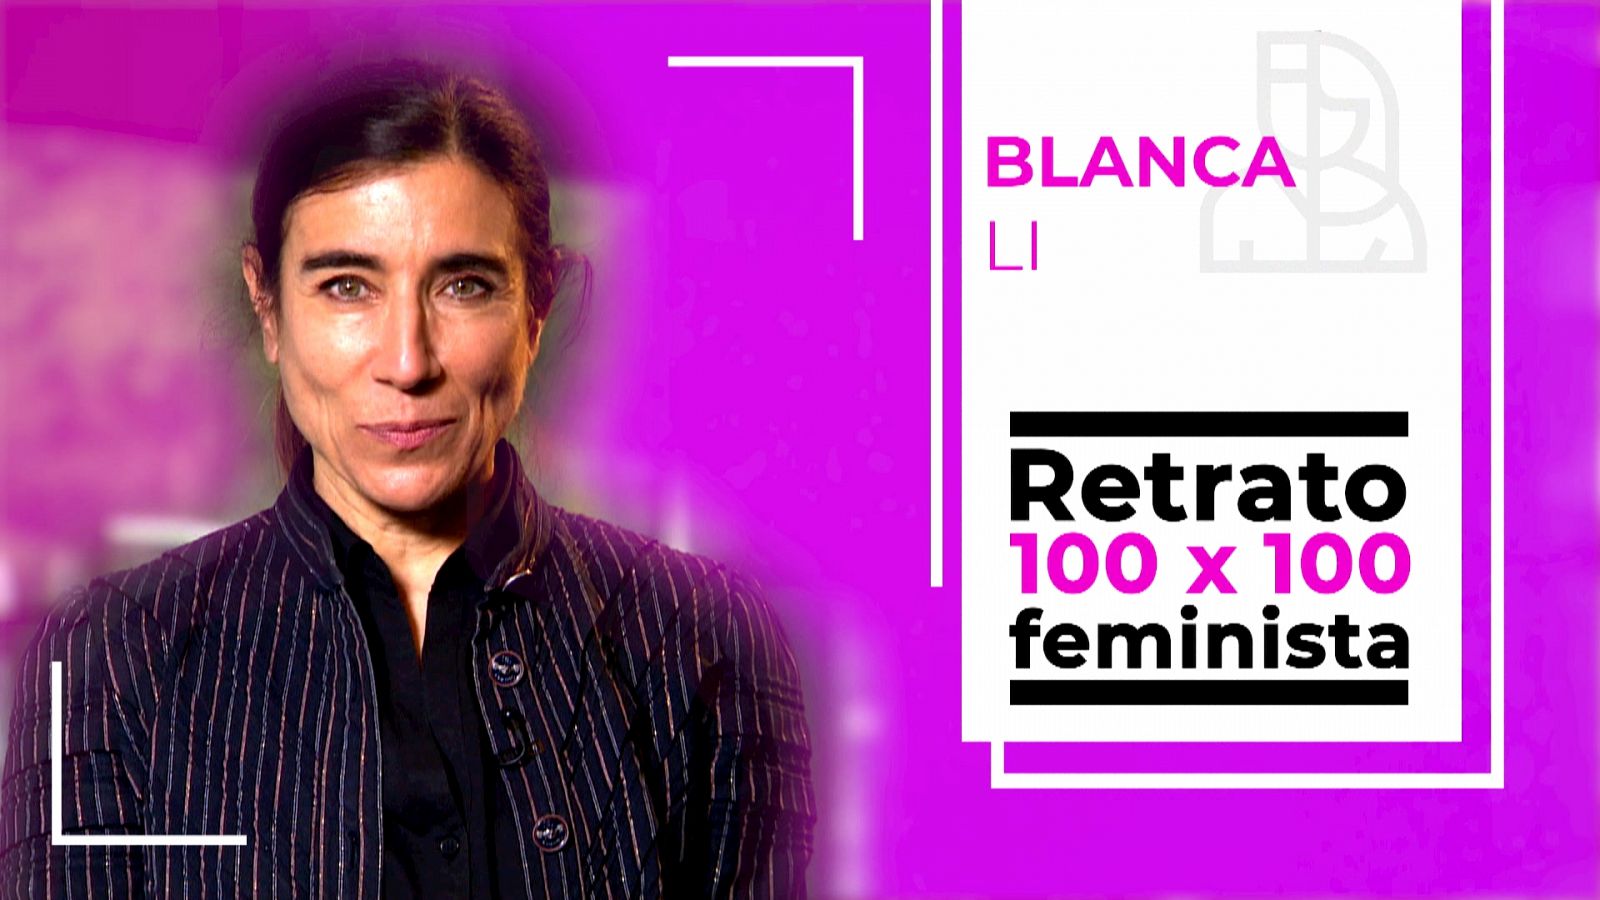 Objetivo Igualdad - Retrato 100x100 feminista: Blanca Li